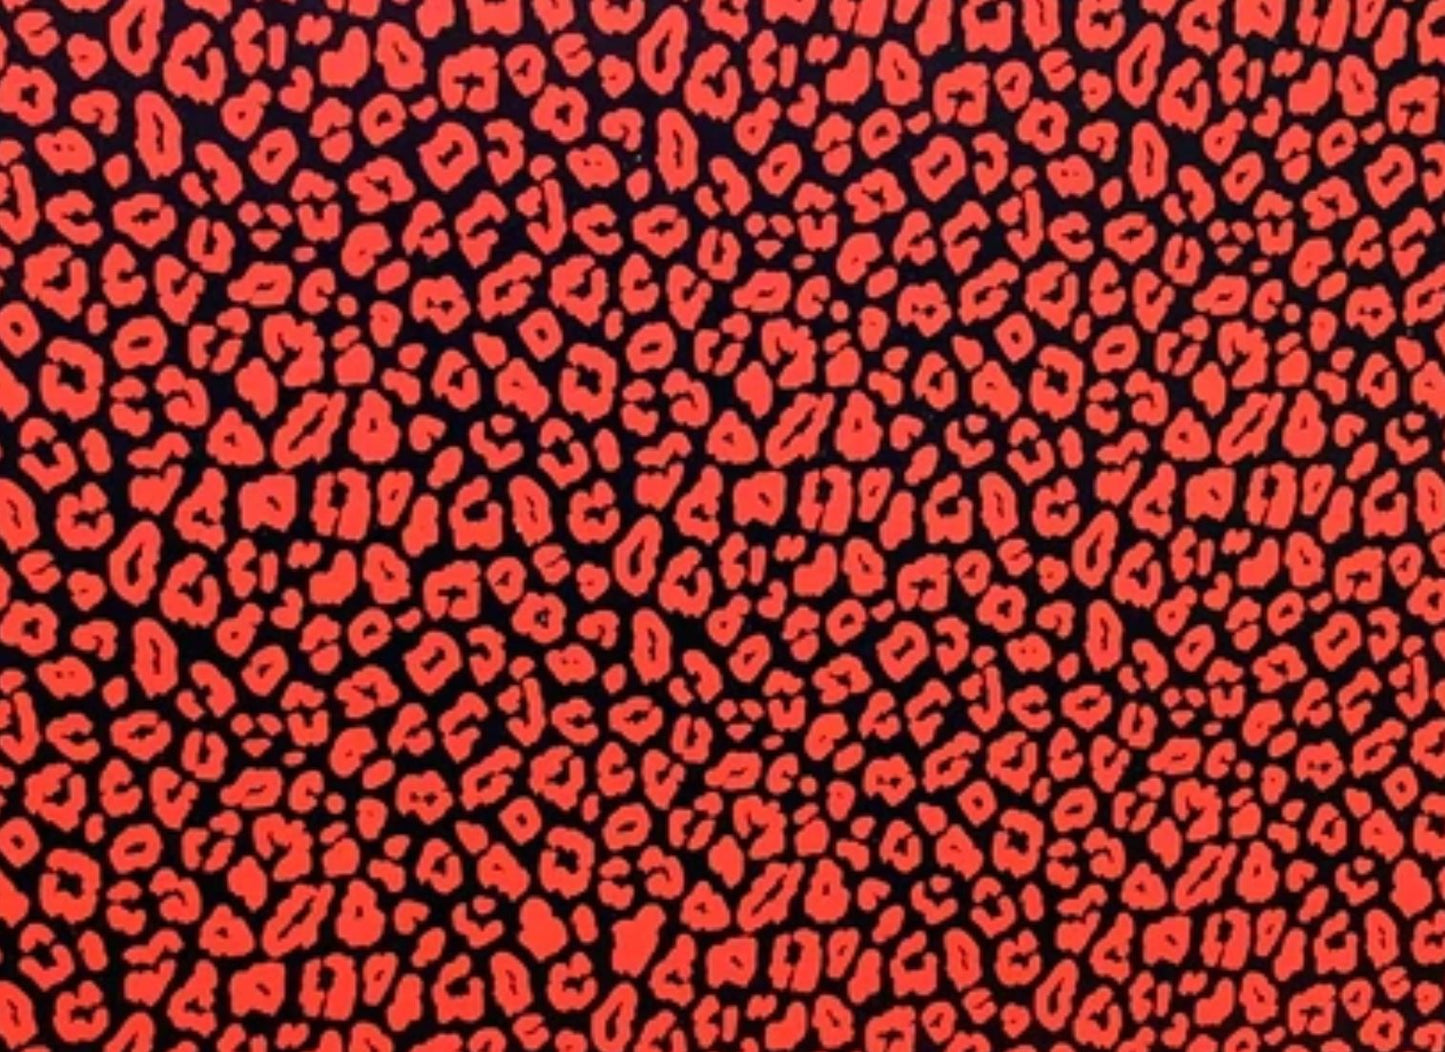 Black & Orange Leopard - Printed Pattern Designs (Sets)